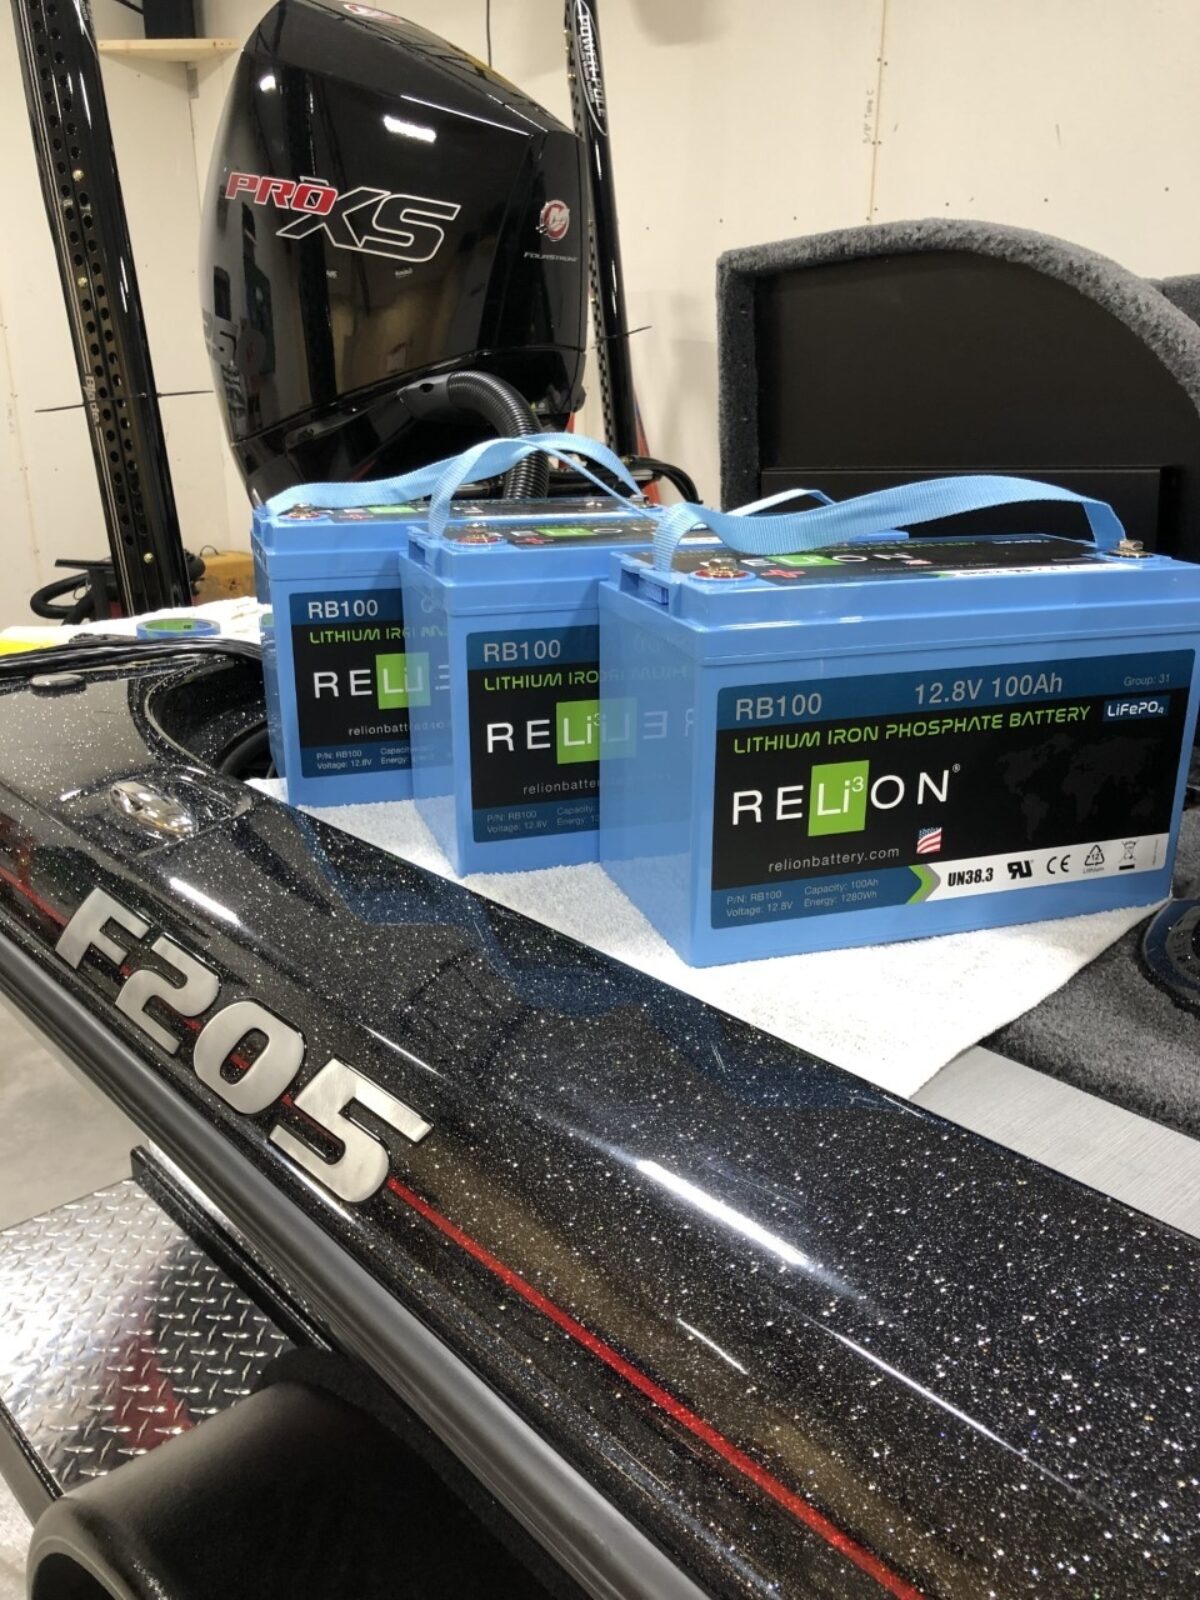 RELiON Batteries